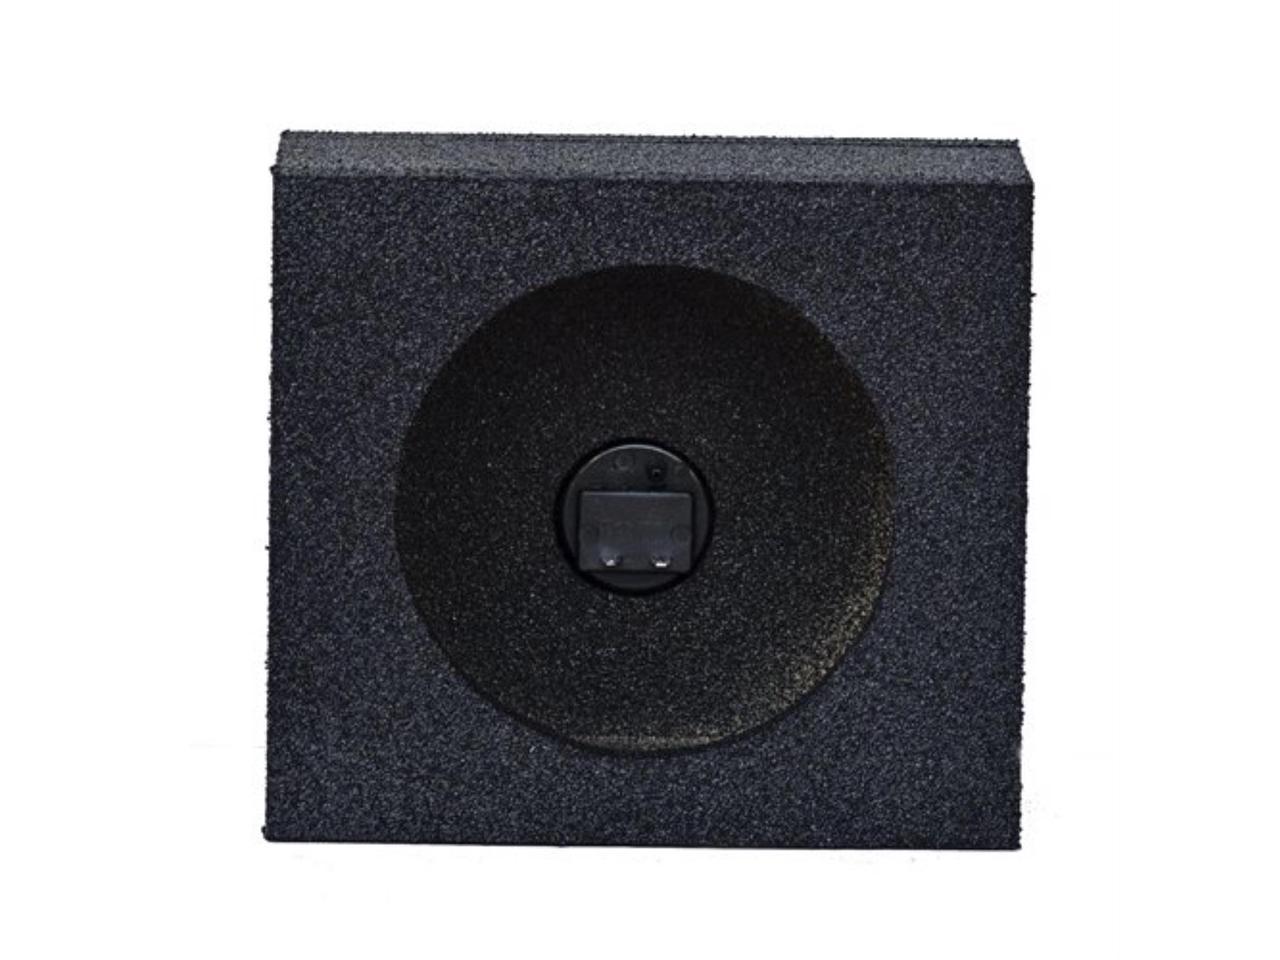 qbomb speaker box